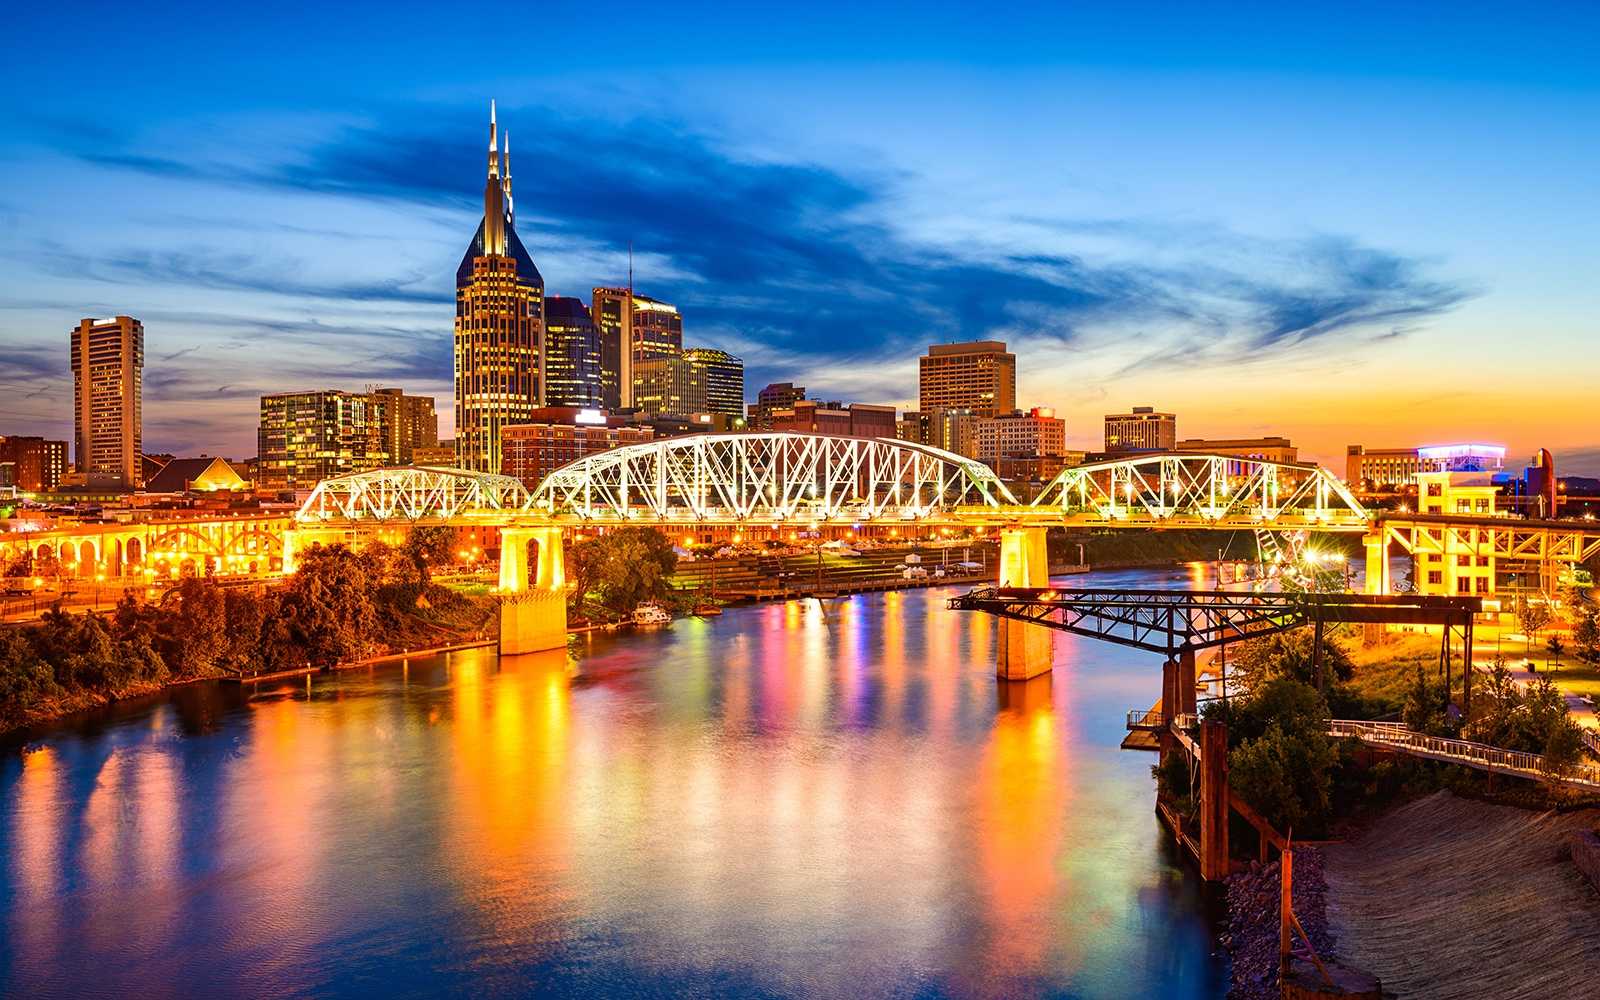  Nashville - Tennessee mang đến cho du khách quốc tế một cái nhìn khác về nước Mỹ